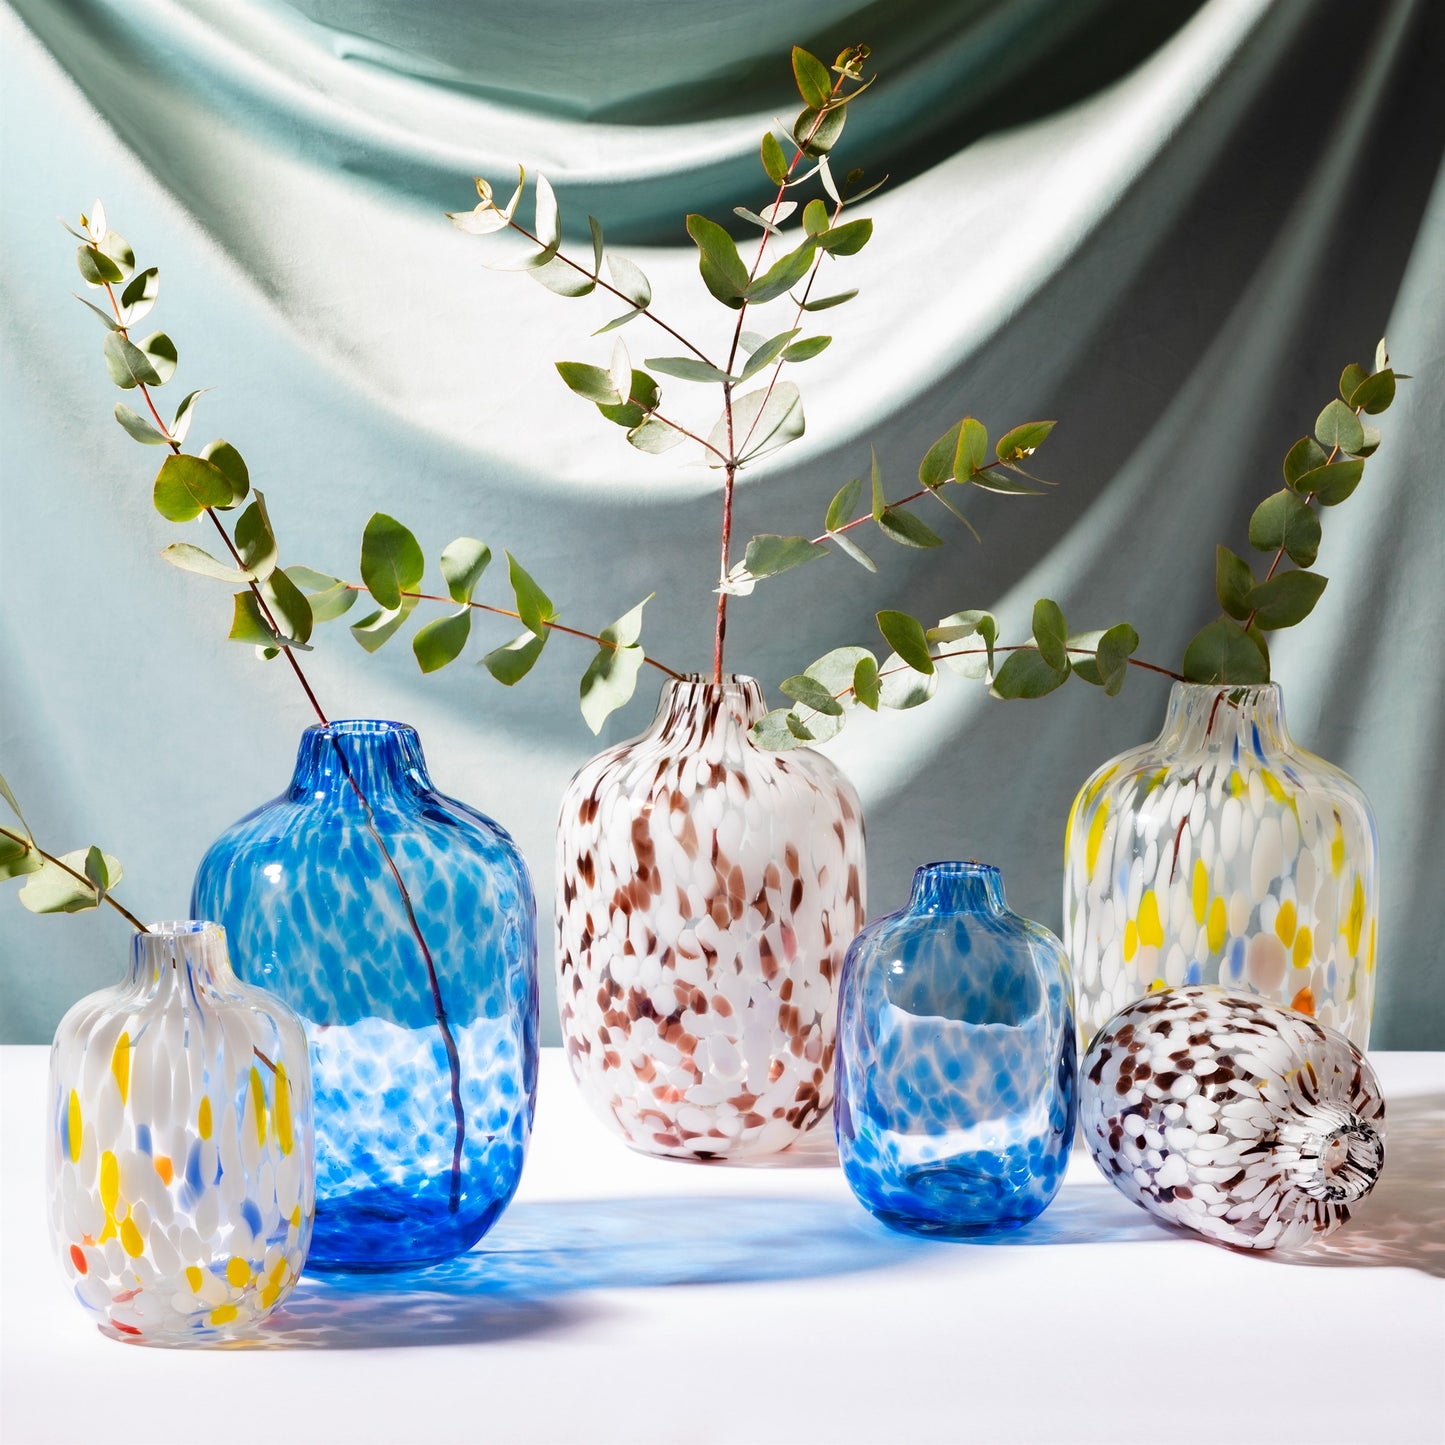 Small Blue Confetti Vase